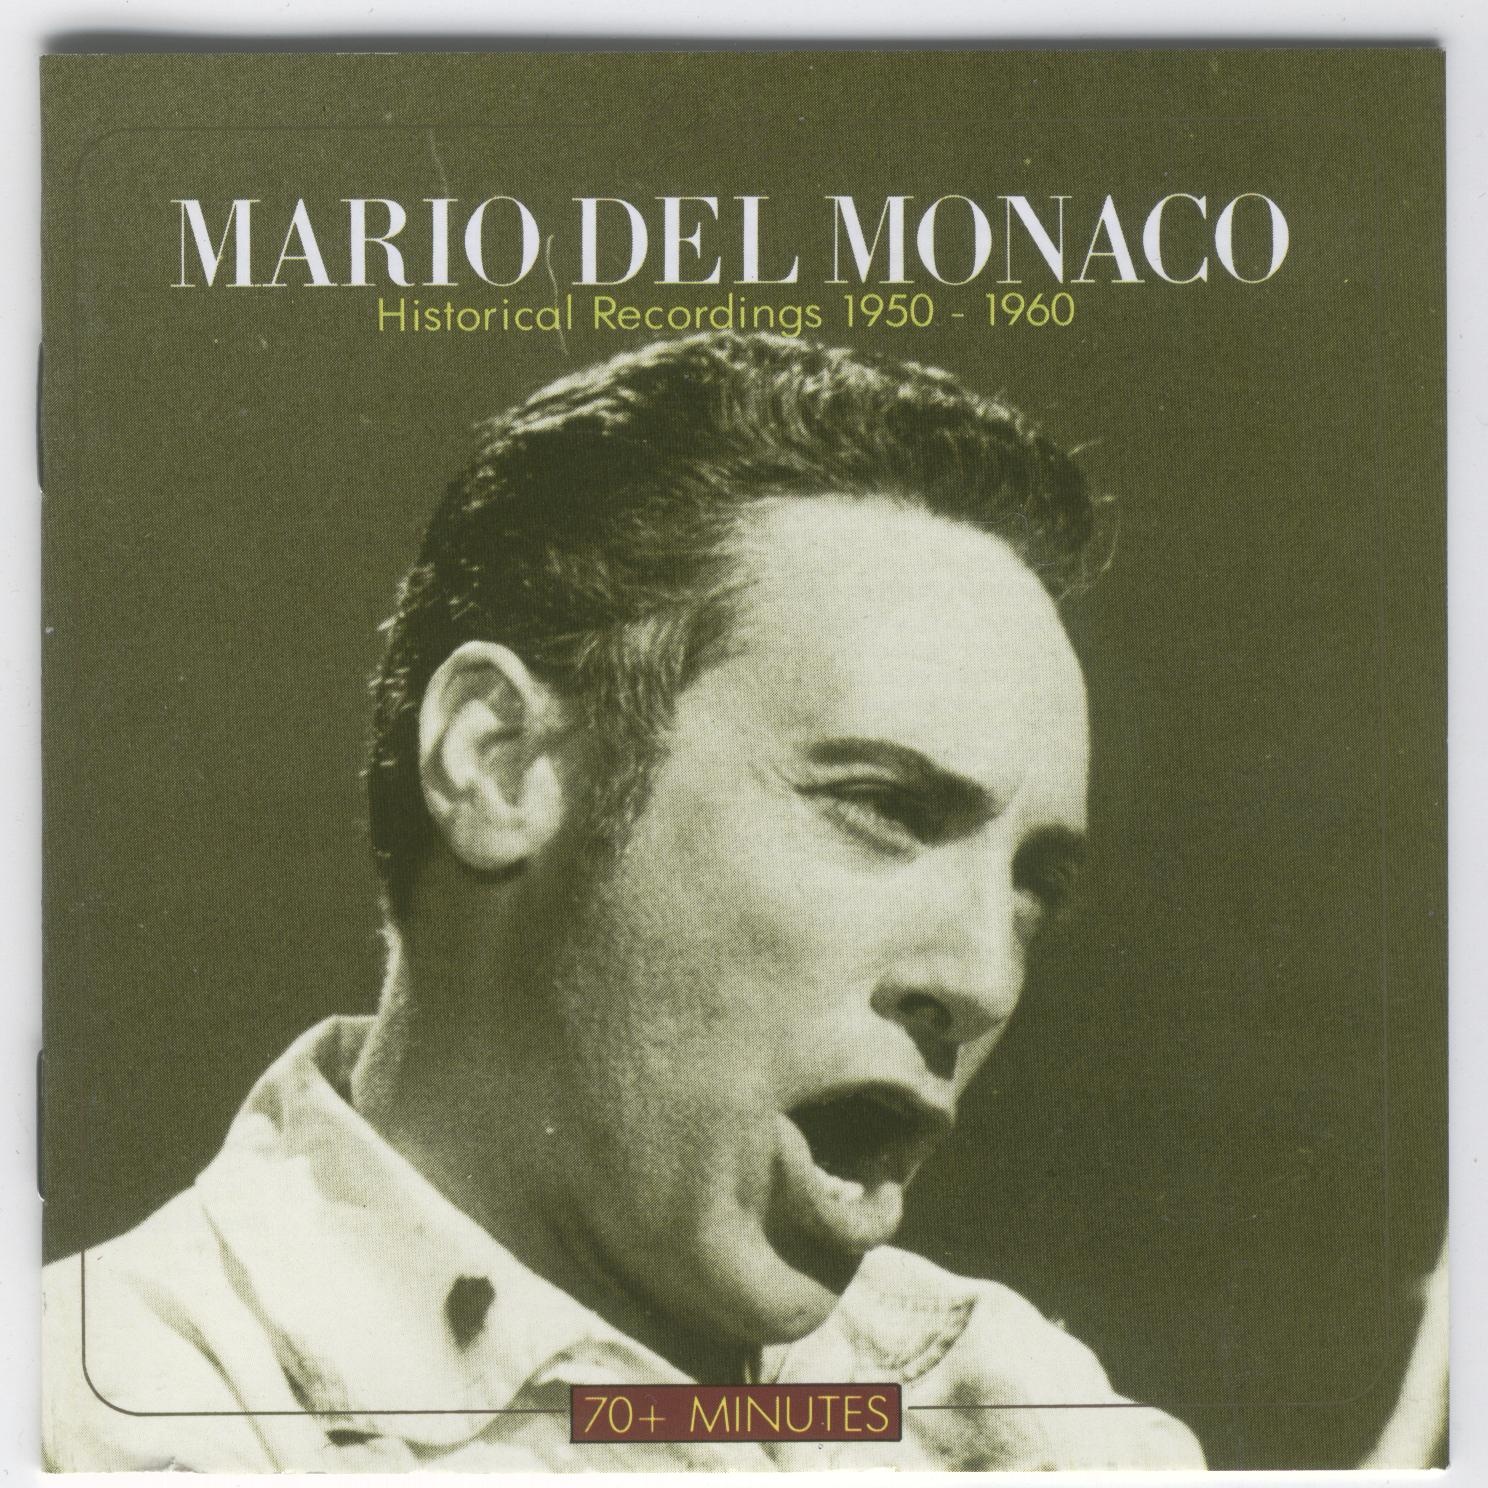 Mario del Monaco: Historical Recordings 1950-1960